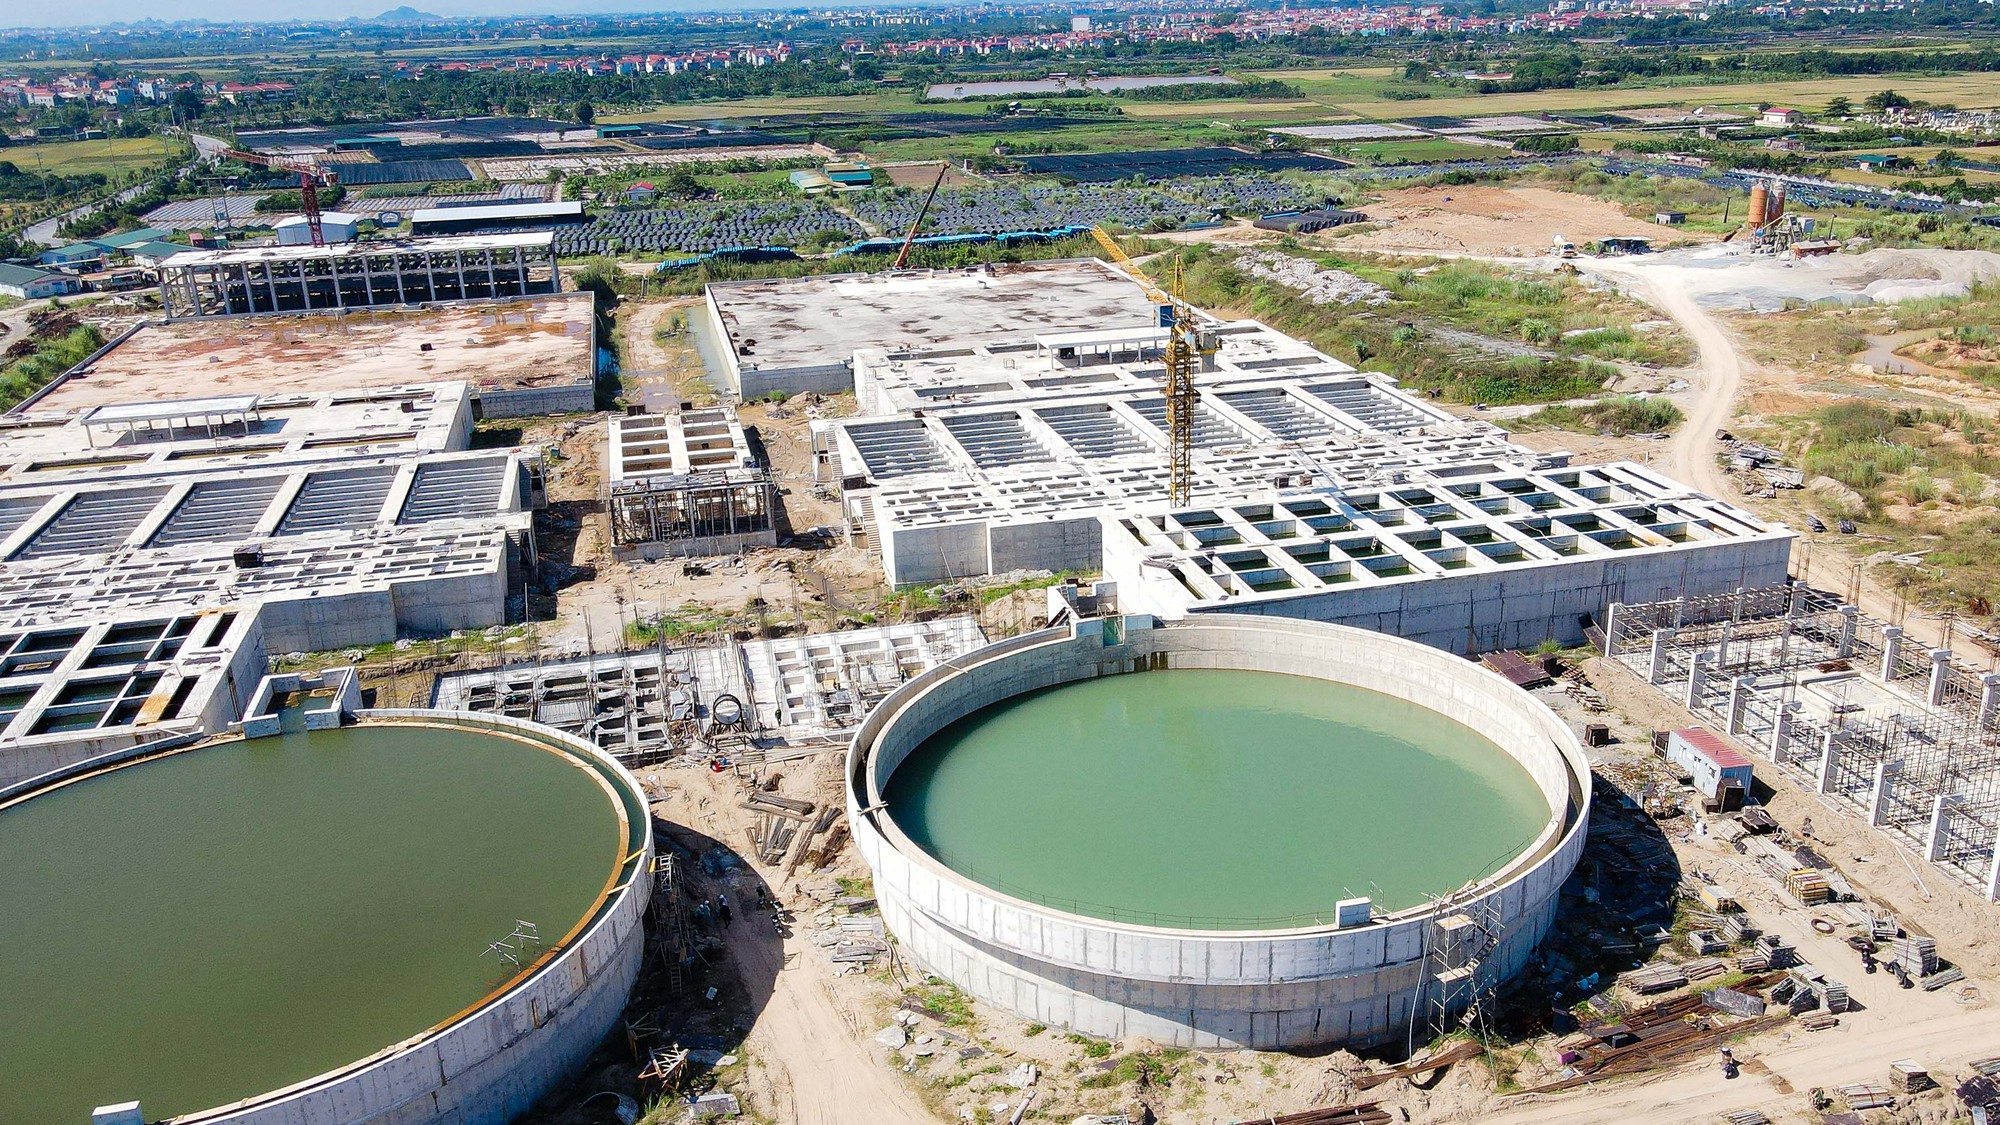 Toàn cảnh nhà máy nước mặt sông Hồng gần 3.700 tỉ đồng - Ảnh 6.